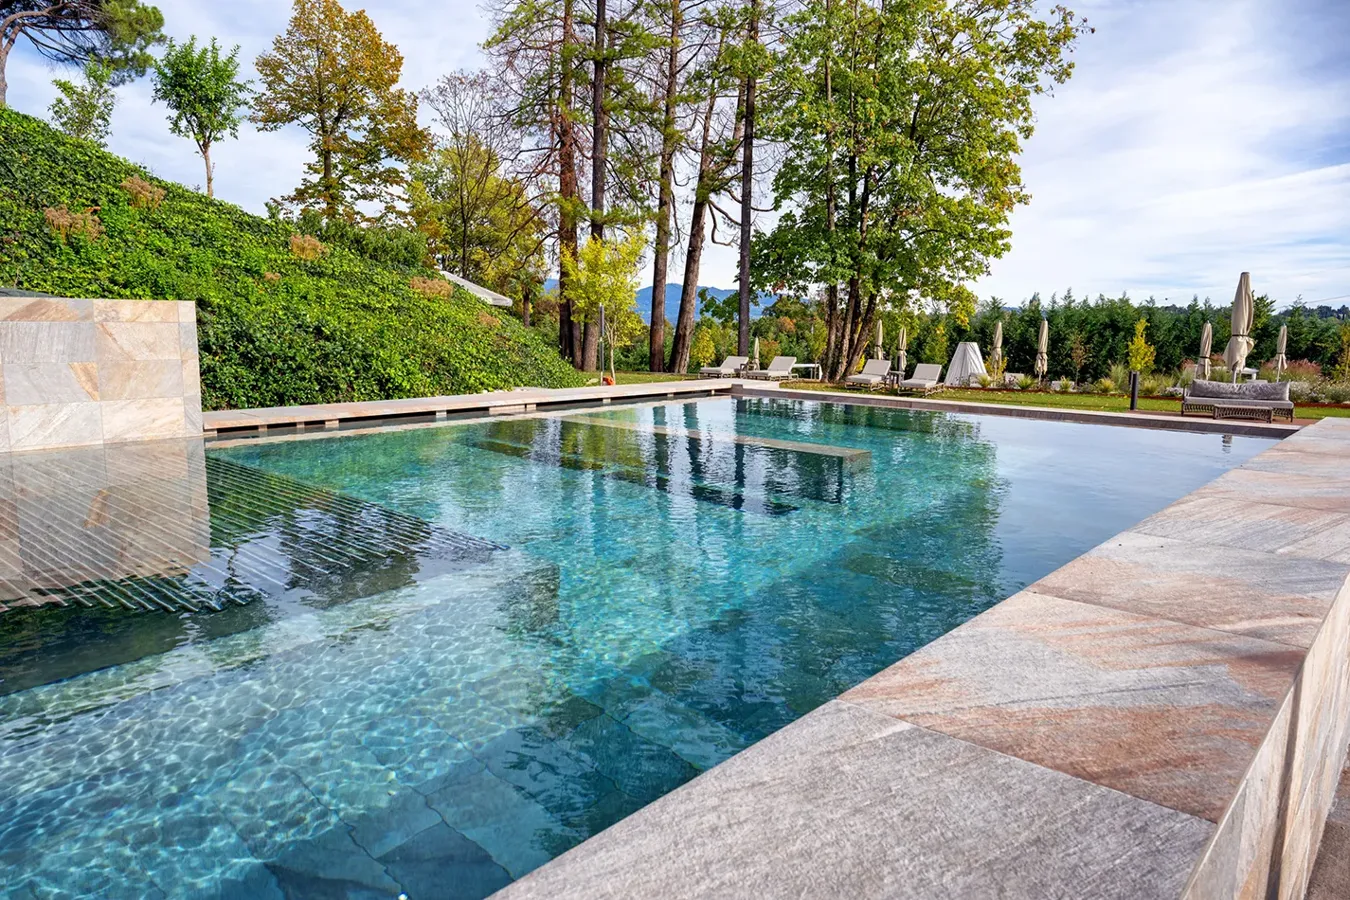 Schwimmbad mit rutschfesten Fliesen in Steinoptik Limes Quartz Multicolor im Außenbereich.